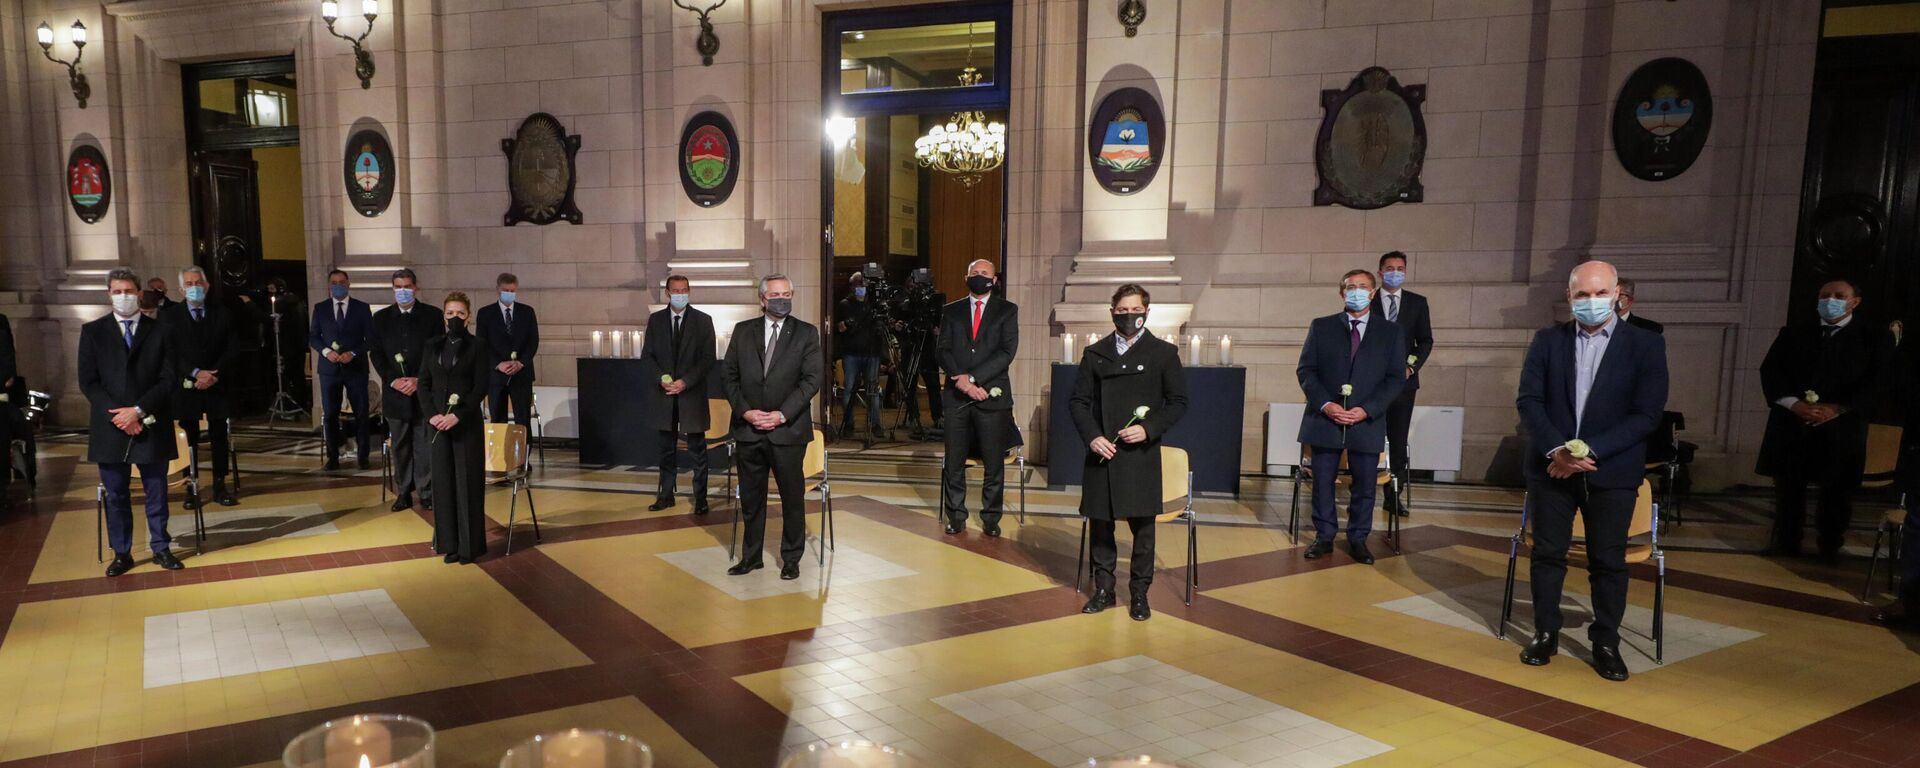 El presidente de Argentina, Alberto Fernández, junto a otras autoridades en un homenaje a los fallecidos por coronavirus - Sputnik Mundo, 1920, 17.08.2021